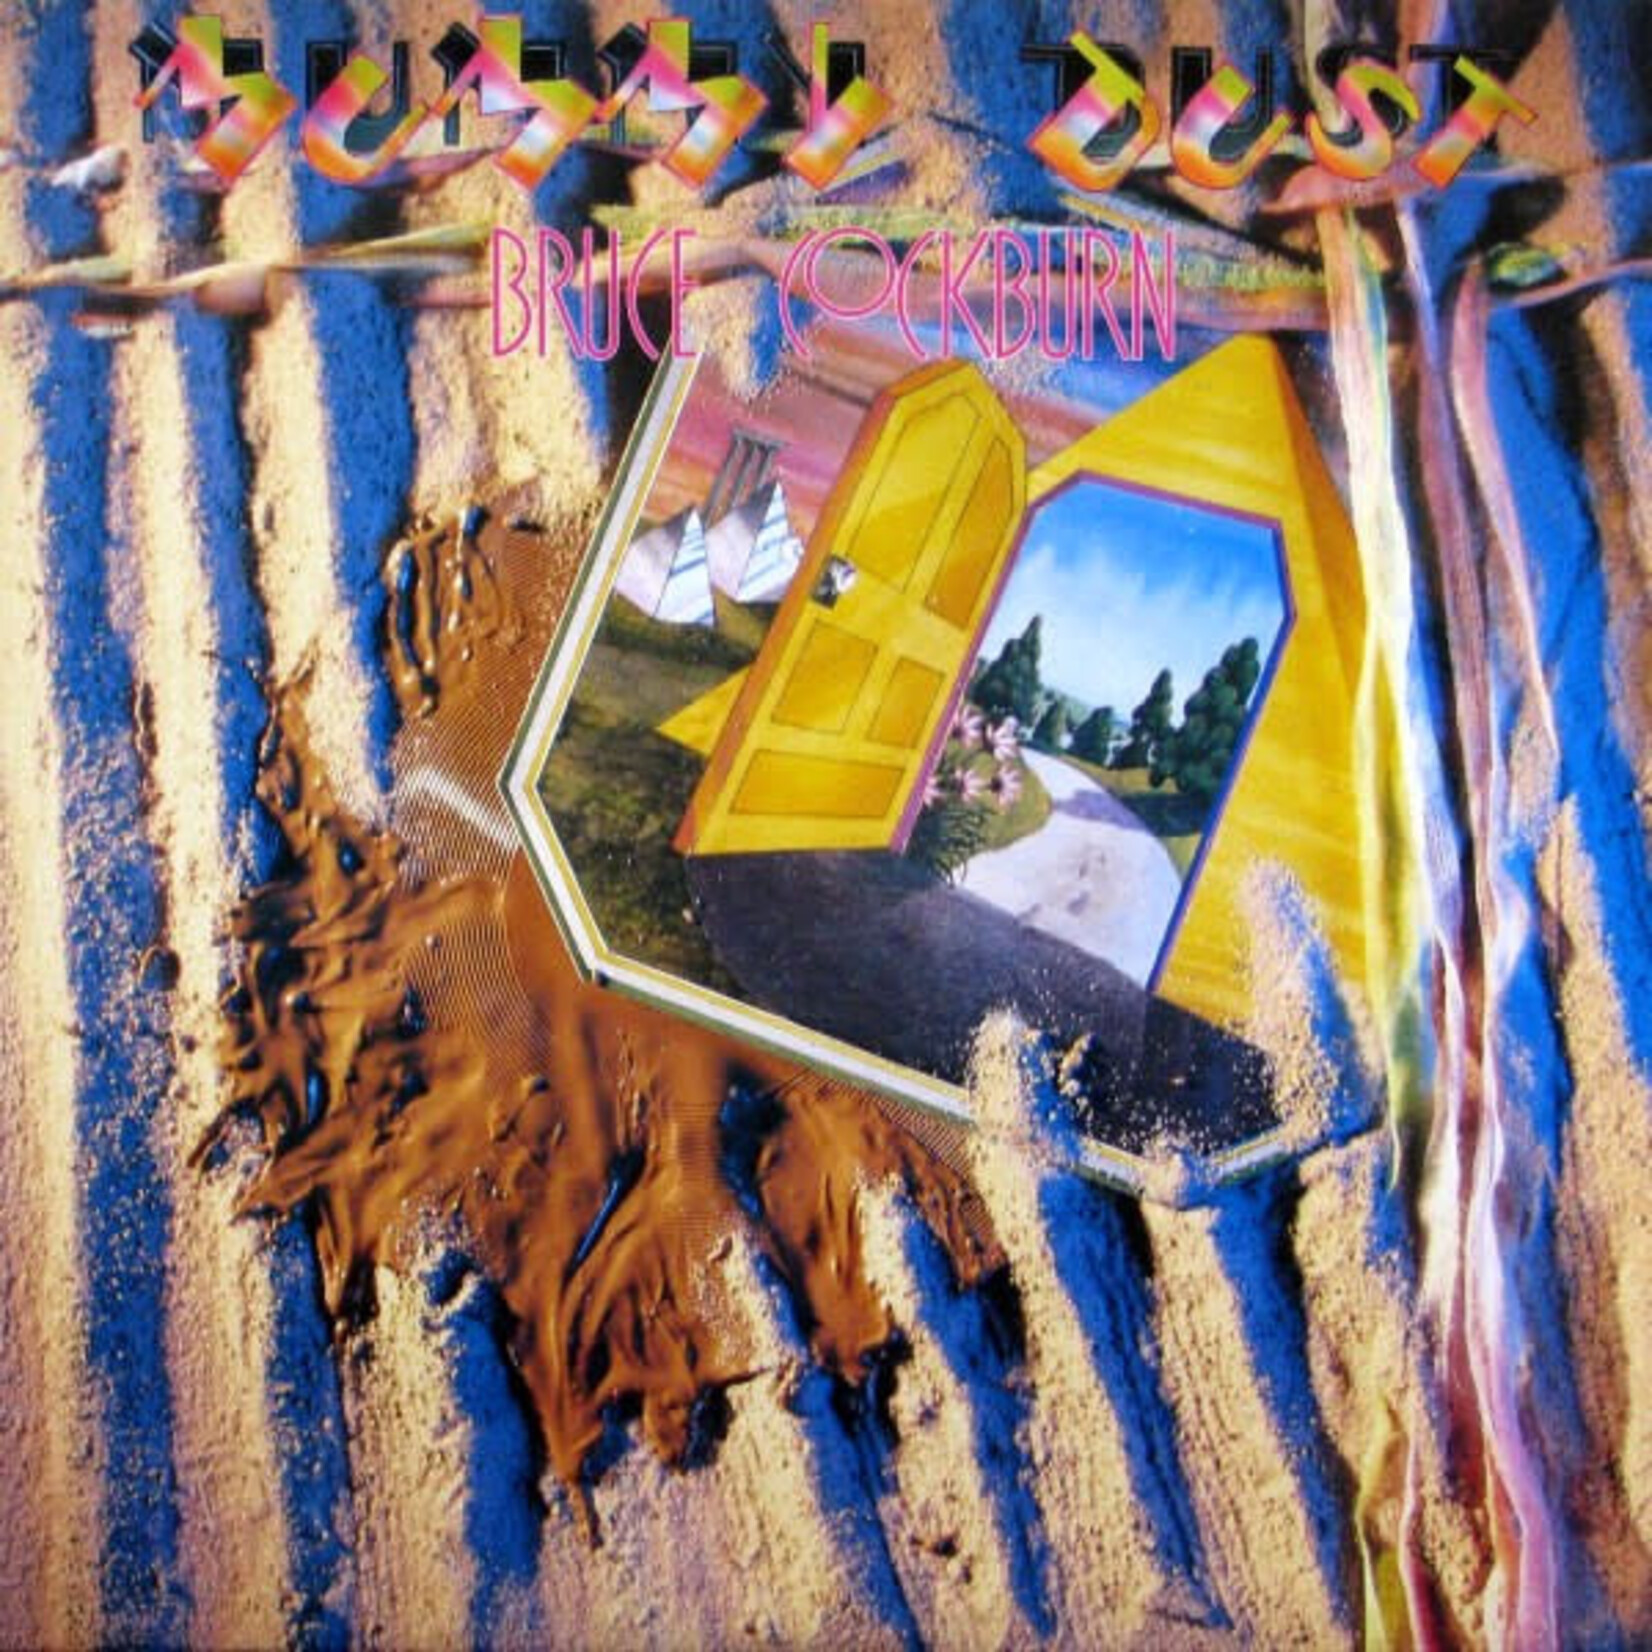 Bruce Cockburn Bruce Cockburn – Mummy Dust (VG, LP, True North – TN-45, 1981)